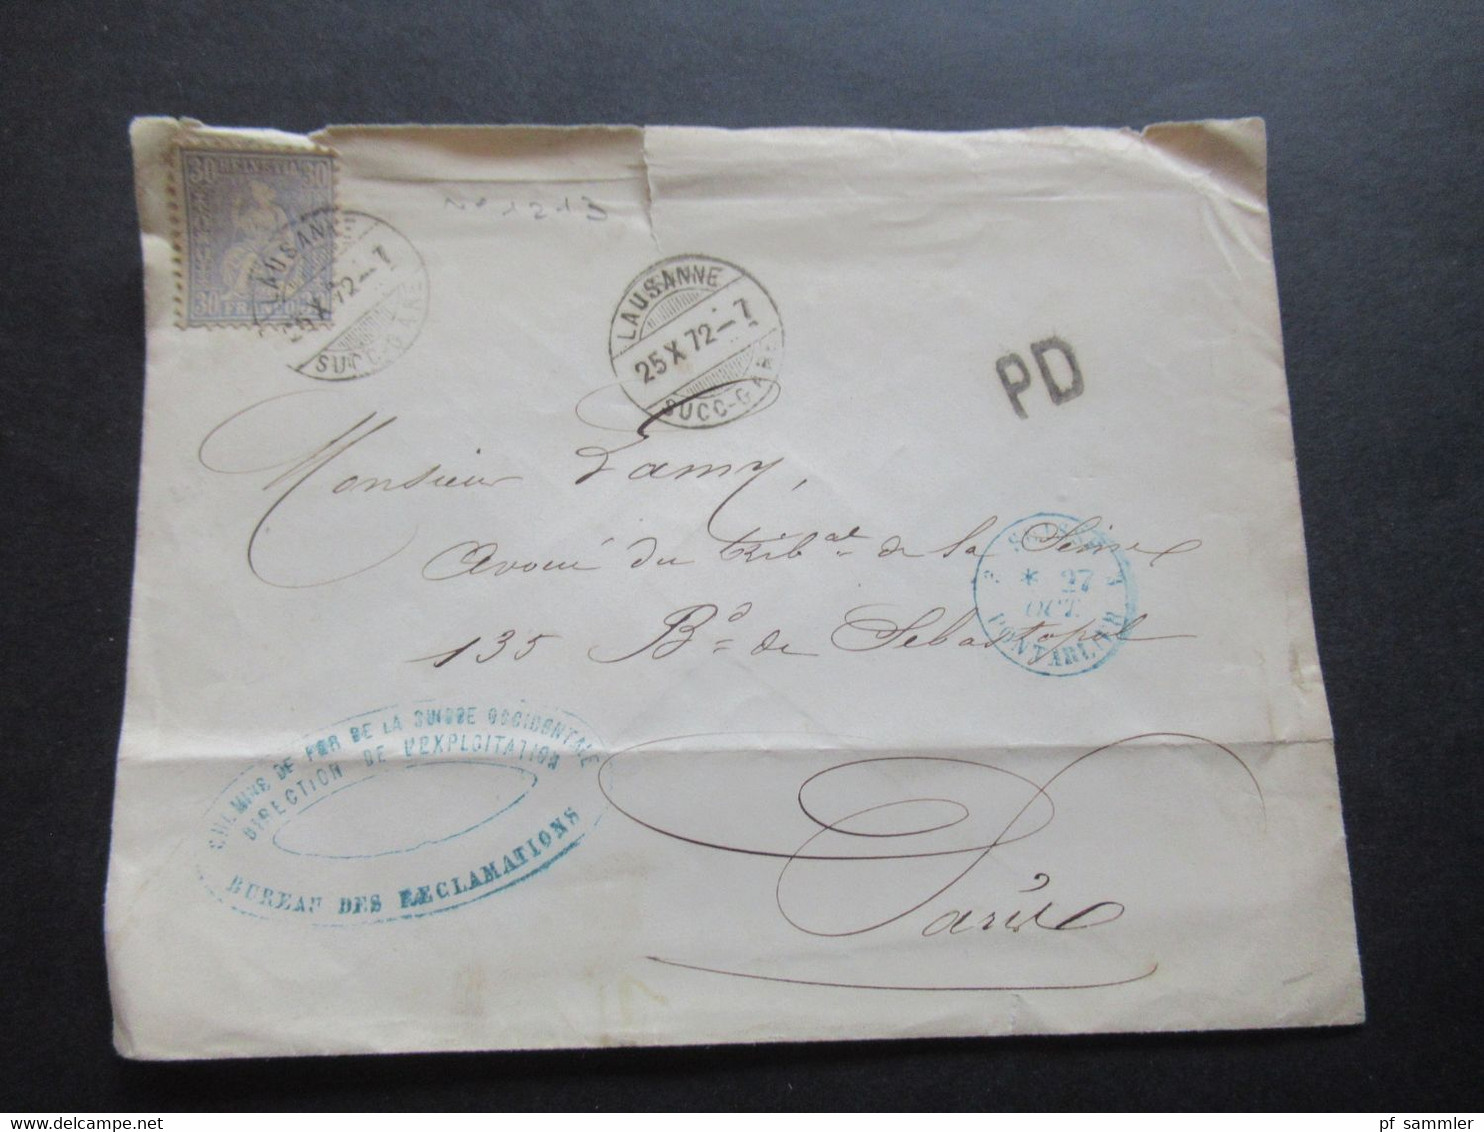 Schweiz 1872 Sitzende Helvetia Nr.33 EF PD Brief Lausanne - Paris Stp. Chemins De Fer De La Suisse Occidentale - Covers & Documents